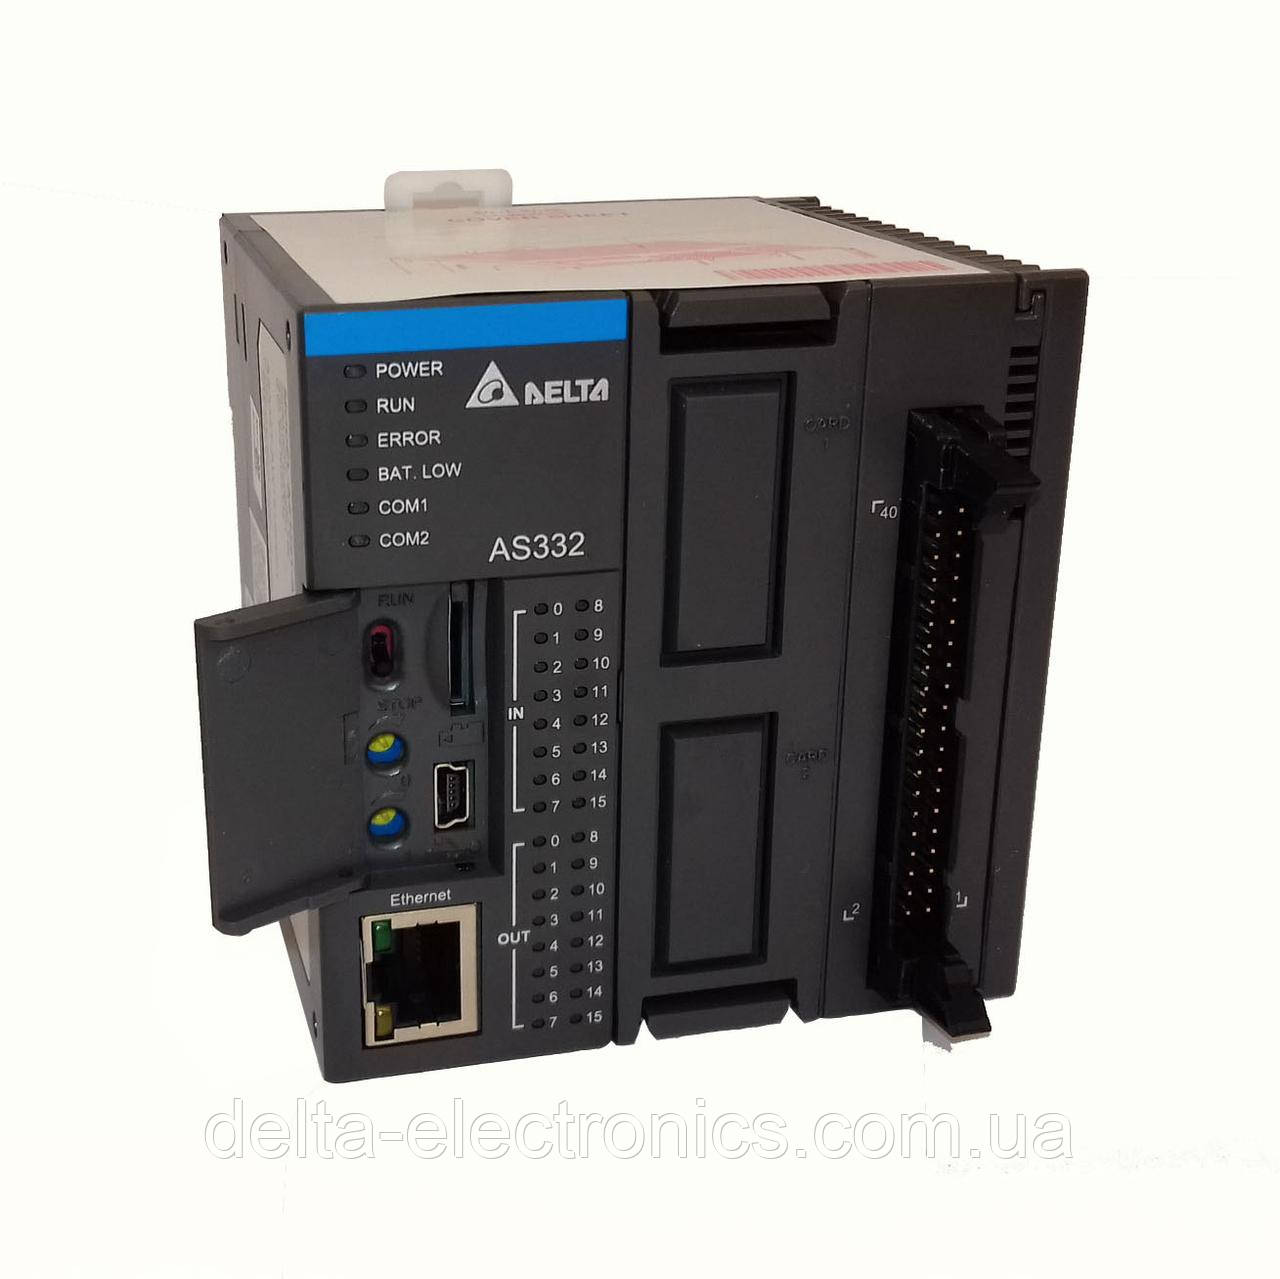 Базовий модуль контролера серії AS300 Delta Electronics, 16DI/16DO транзисторні виходи (PNP), Ethernet